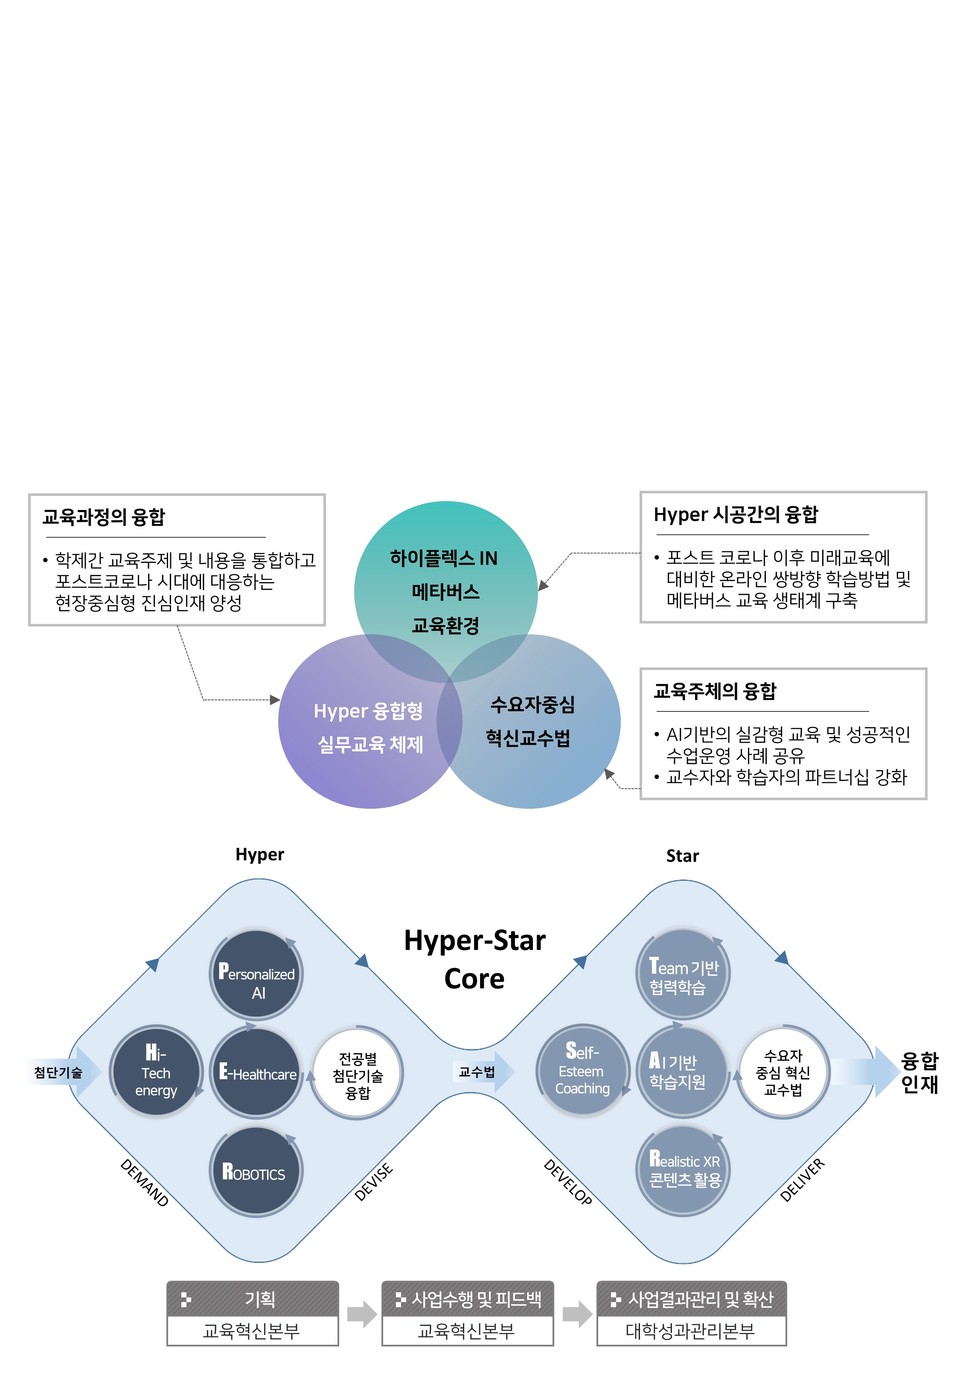 삼육보건대의 대표적 혁신 프로그램 ‘Hyper-Star Core’